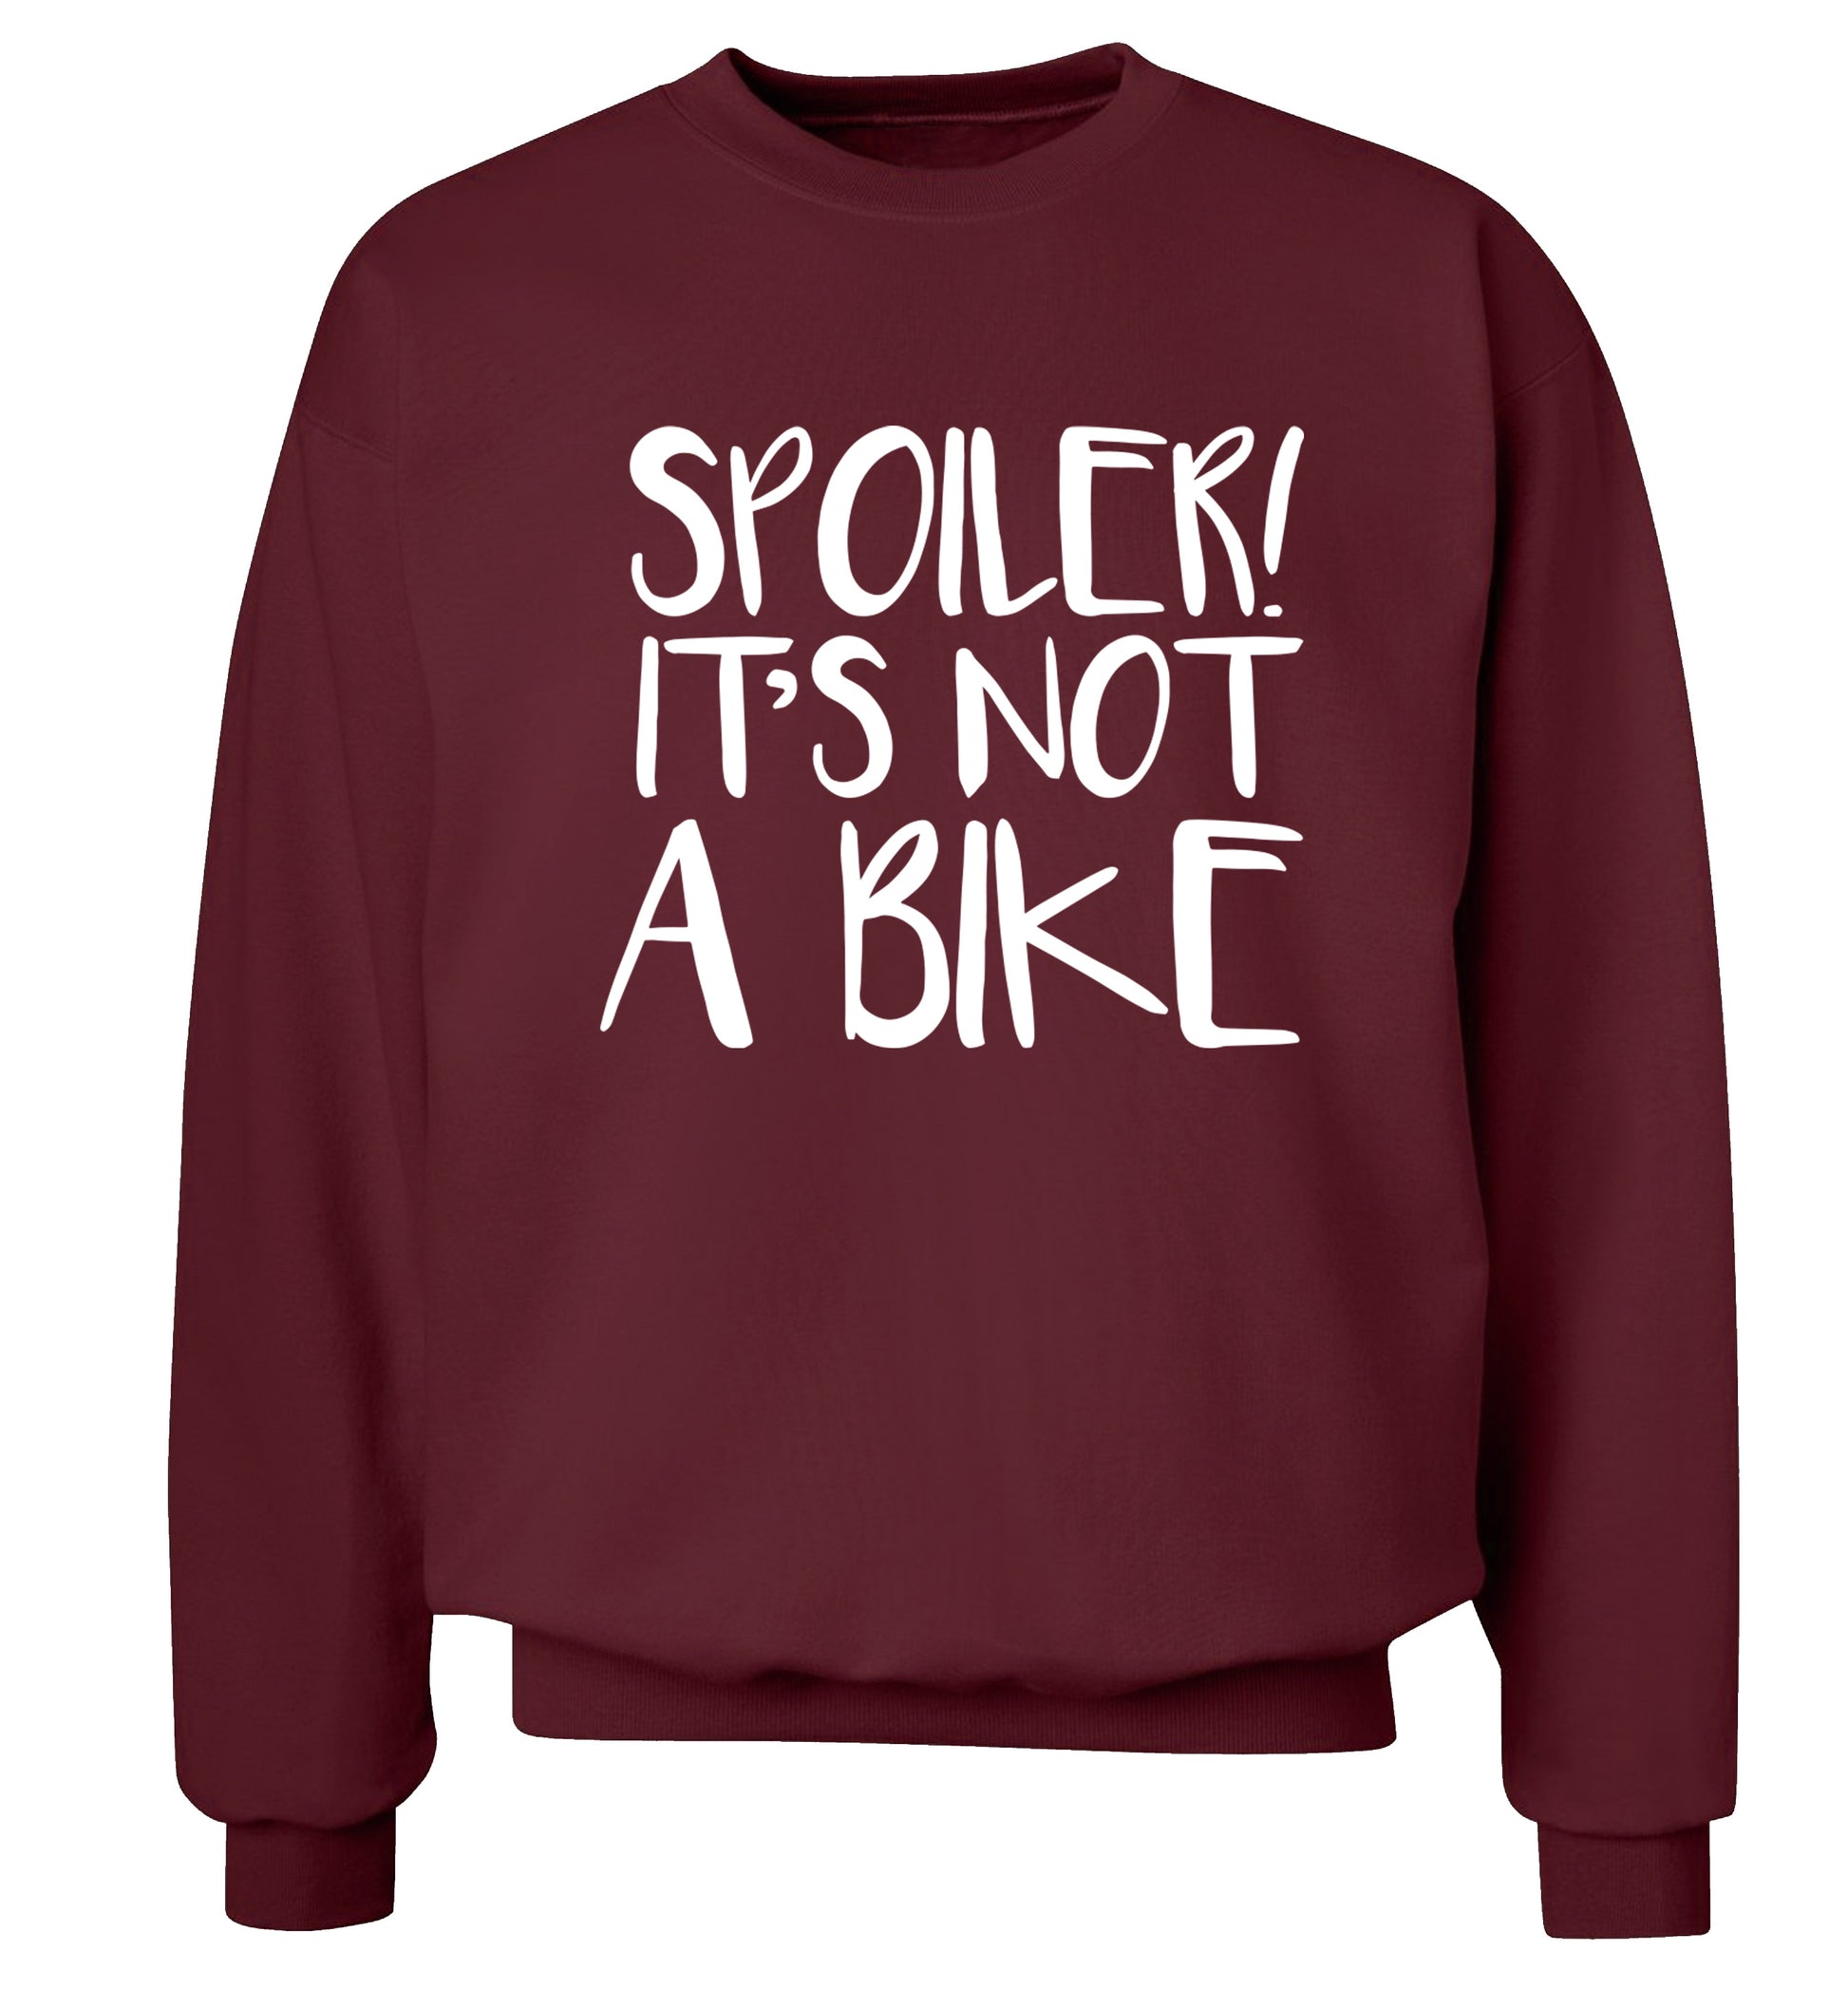 Spoiler it's not a bike Adult's unisex maroon Sweater 2XL